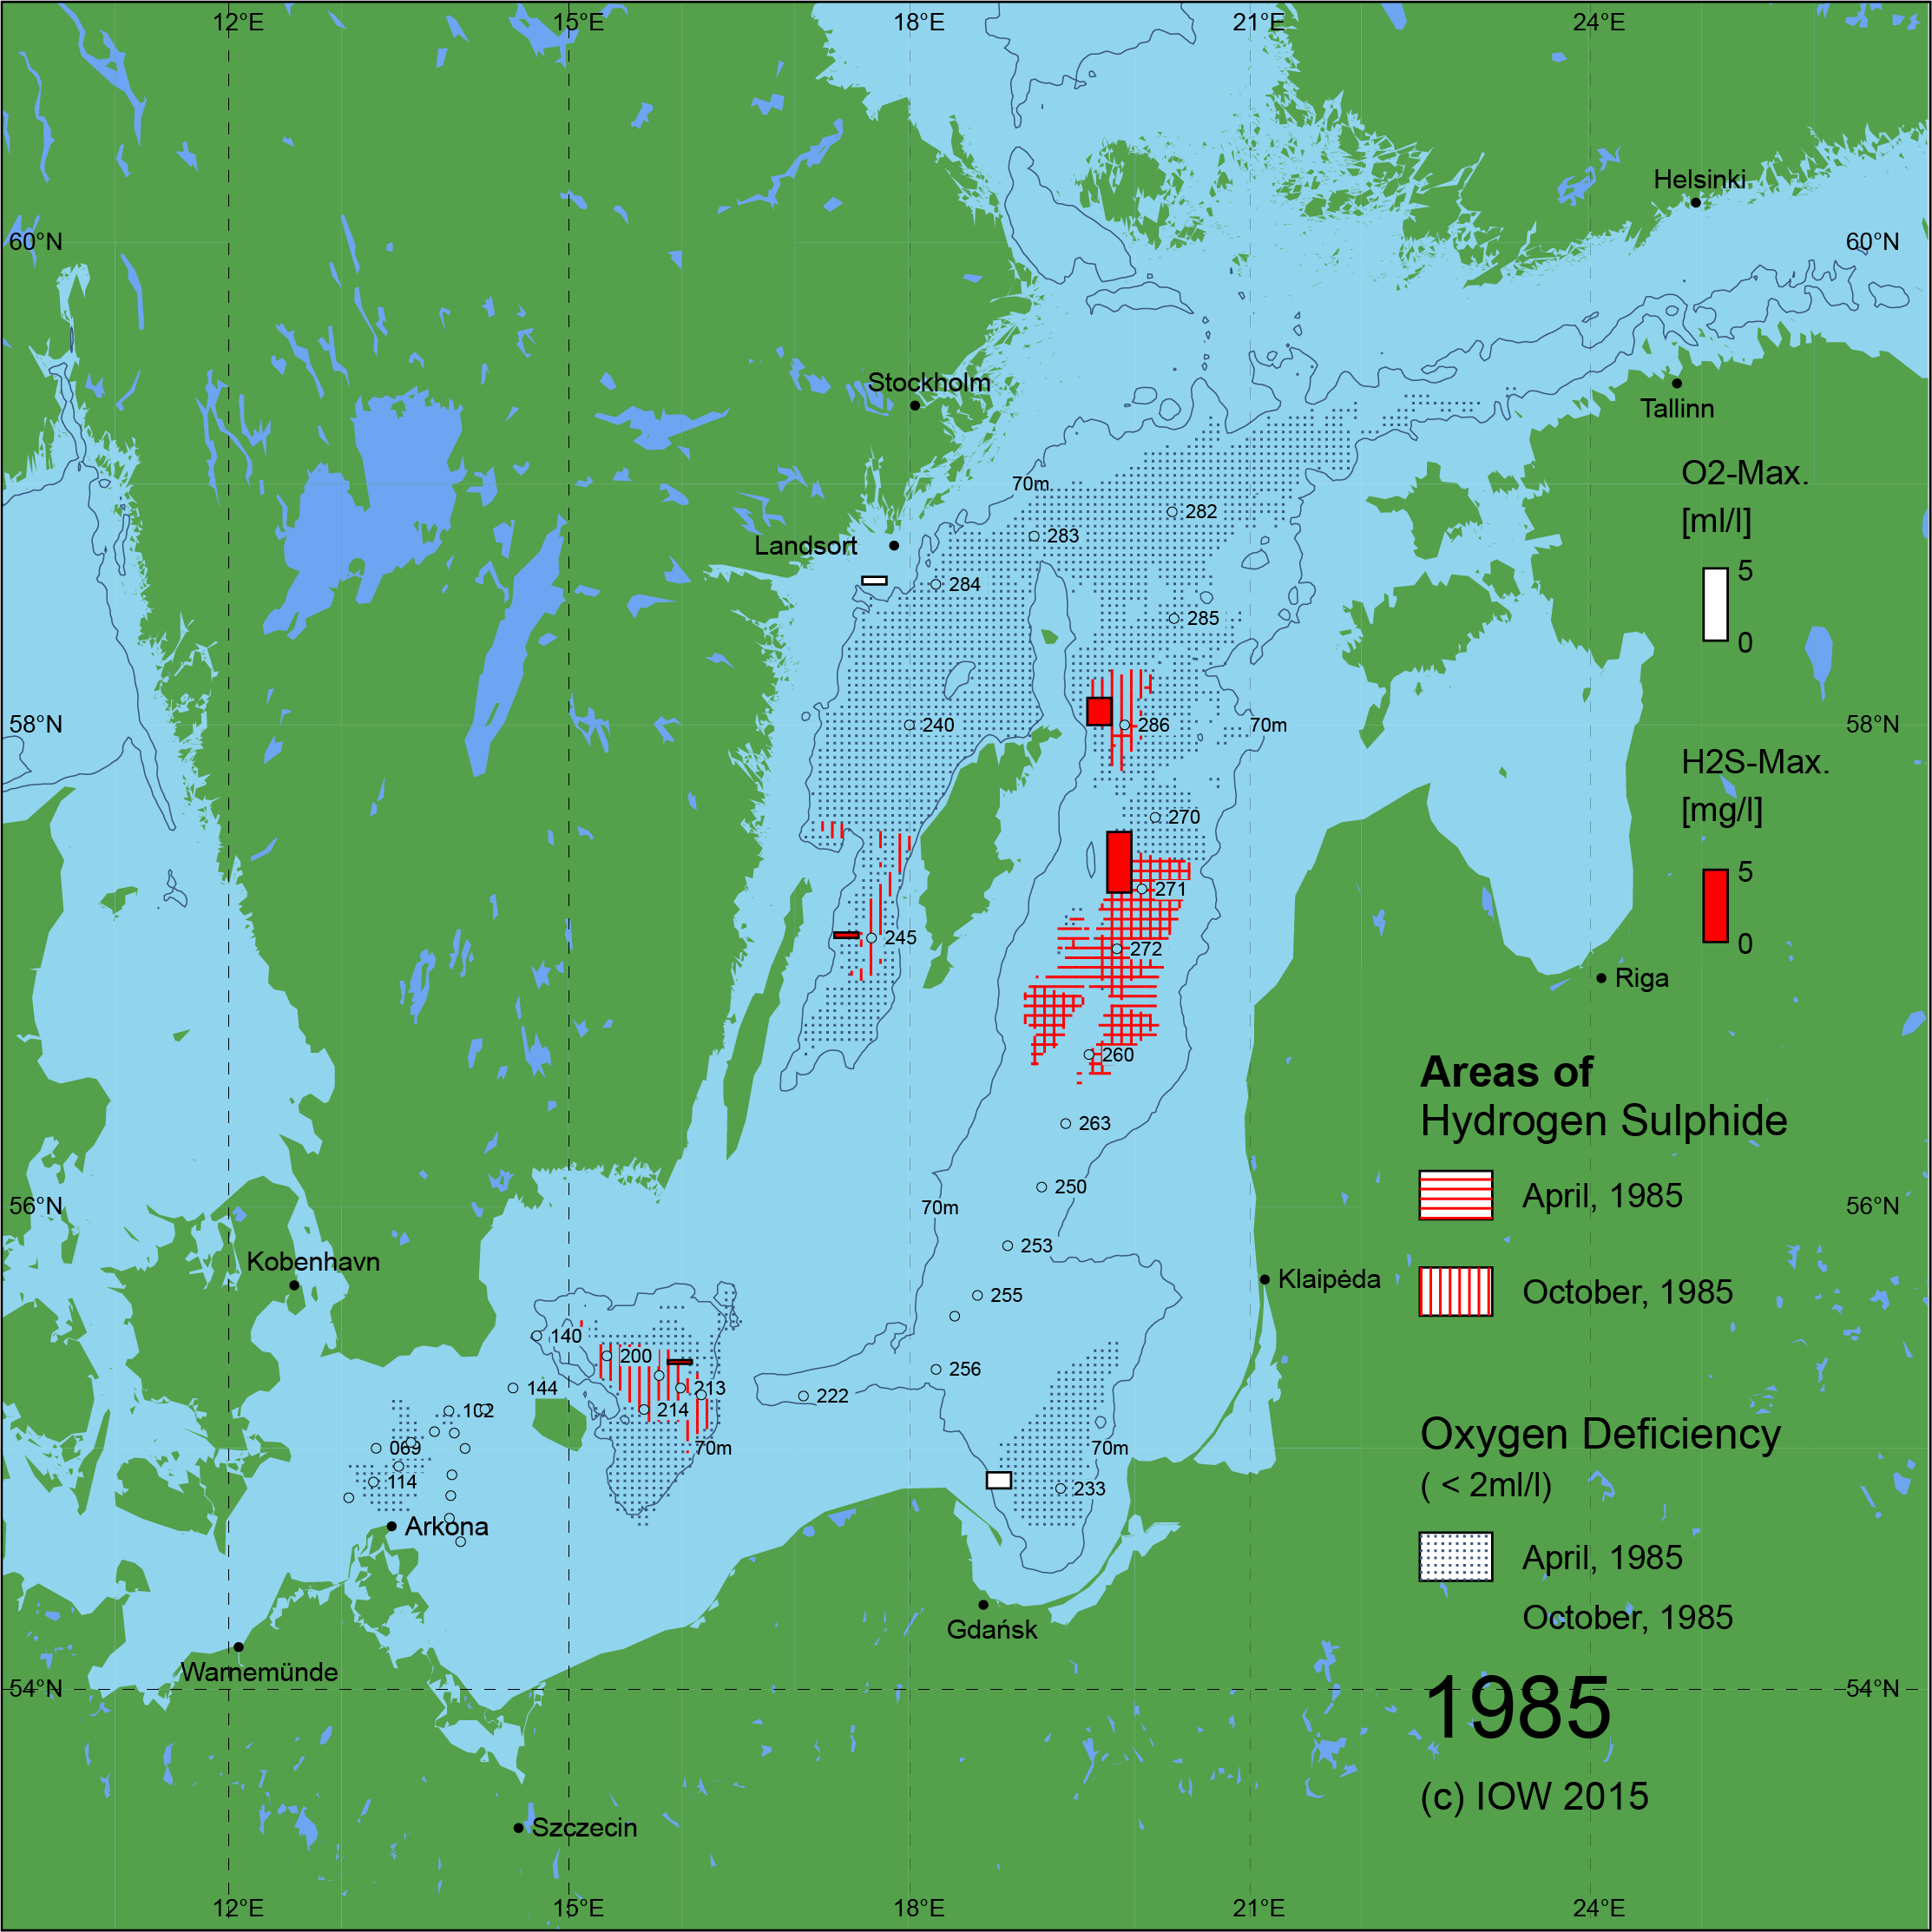 Sauerstoffarme und sauerstofffreie Gebiete in der Ostsee - 1985